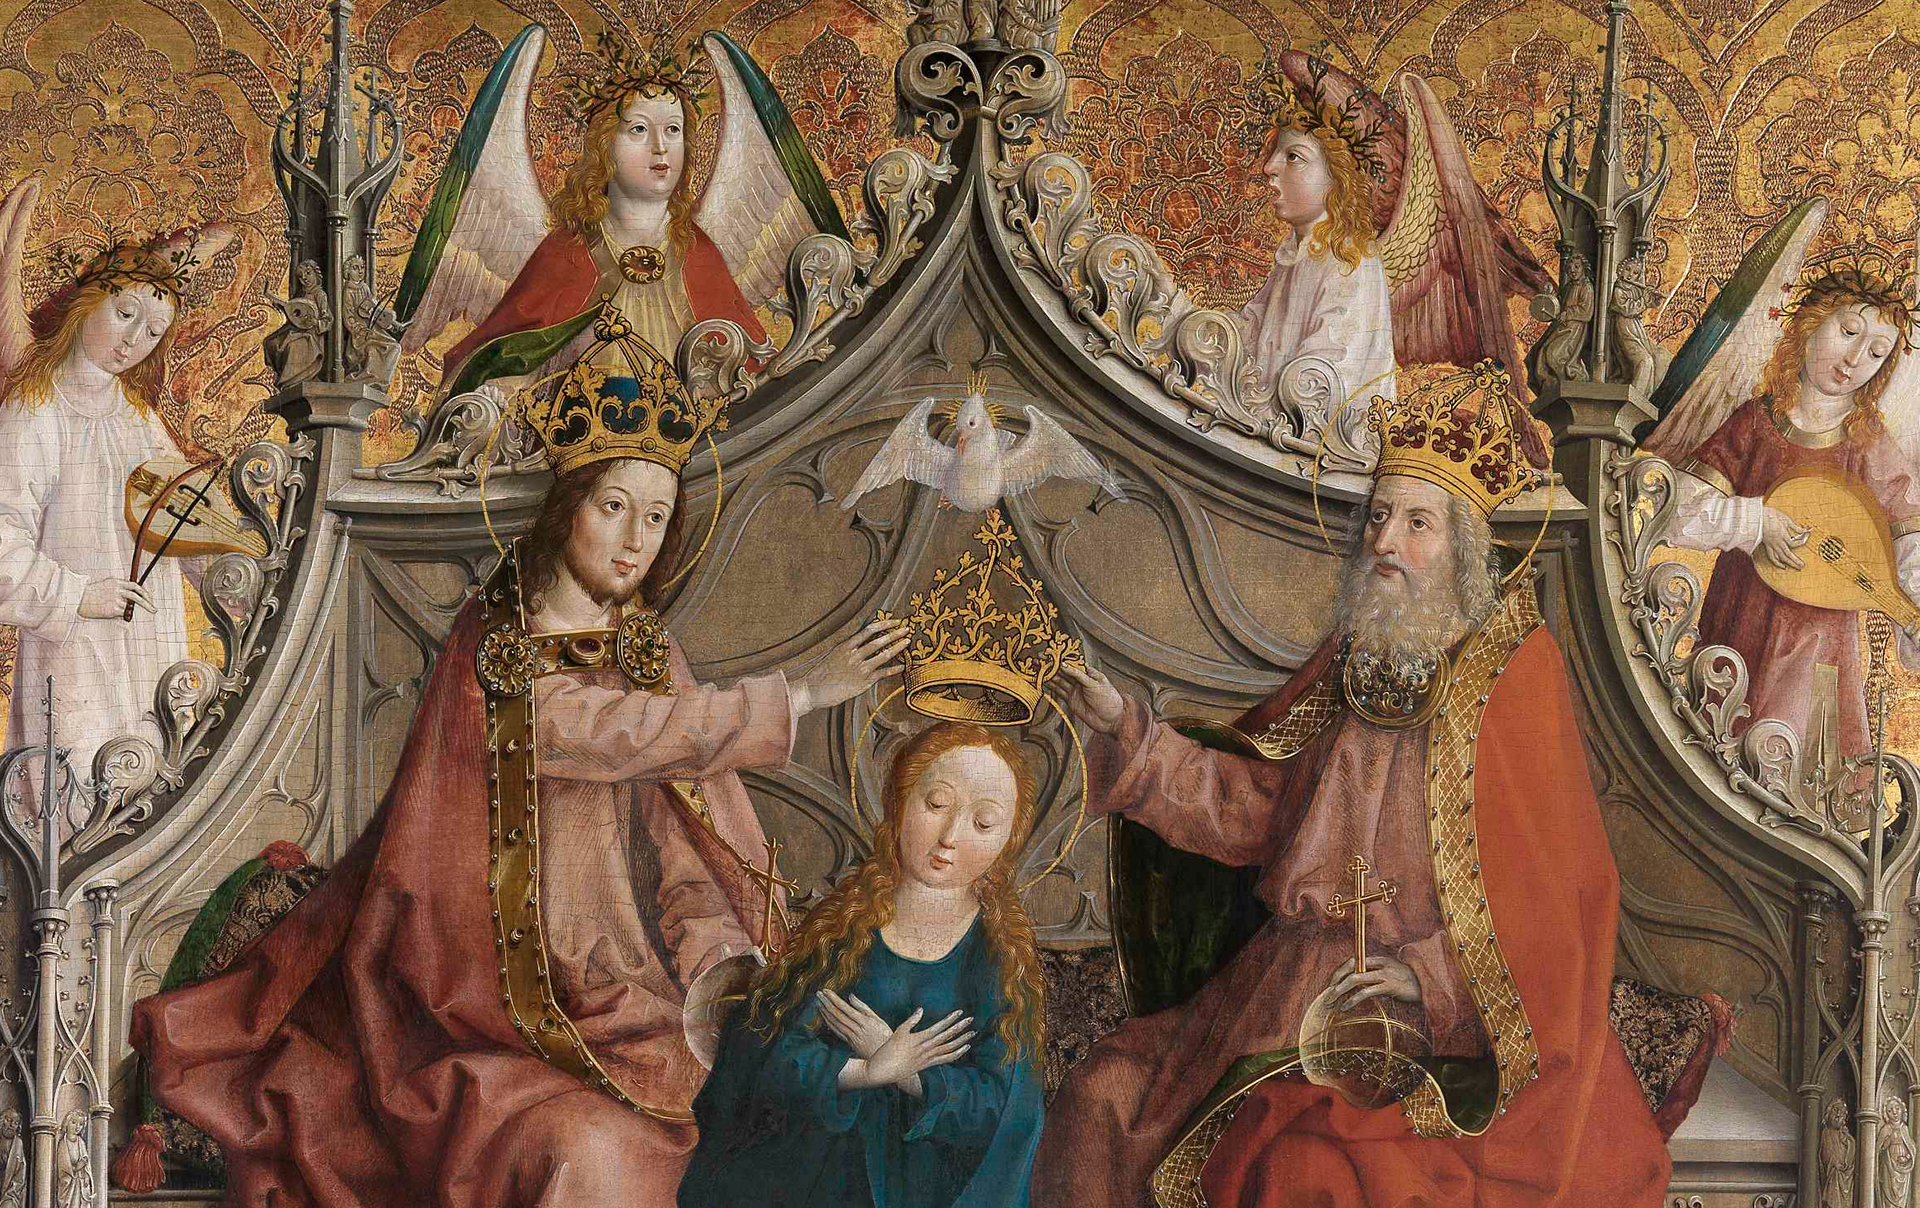 Ein gotisches Gemälde, welches die Krönung Marias zeigt. Maria sitzt auf einer Bank mit gotischen Ornamenten, die von Engeln umgeben ist.